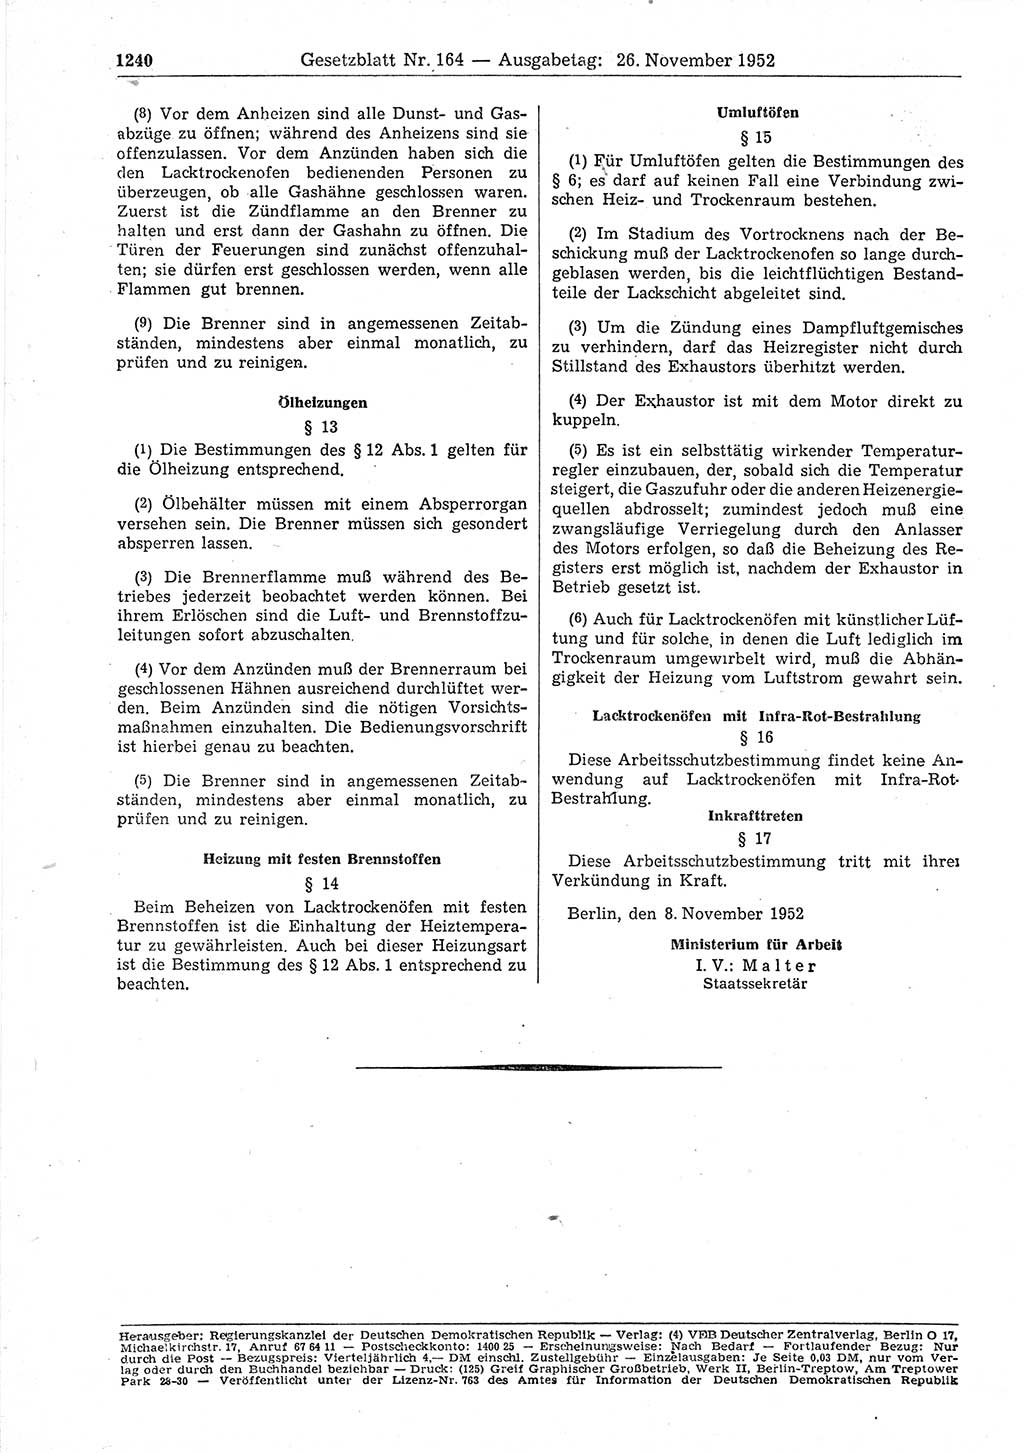 Gesetzblatt (GBl.) der Deutschen Demokratischen Republik (DDR) 1952, Seite 1240 (GBl. DDR 1952, S. 1240)